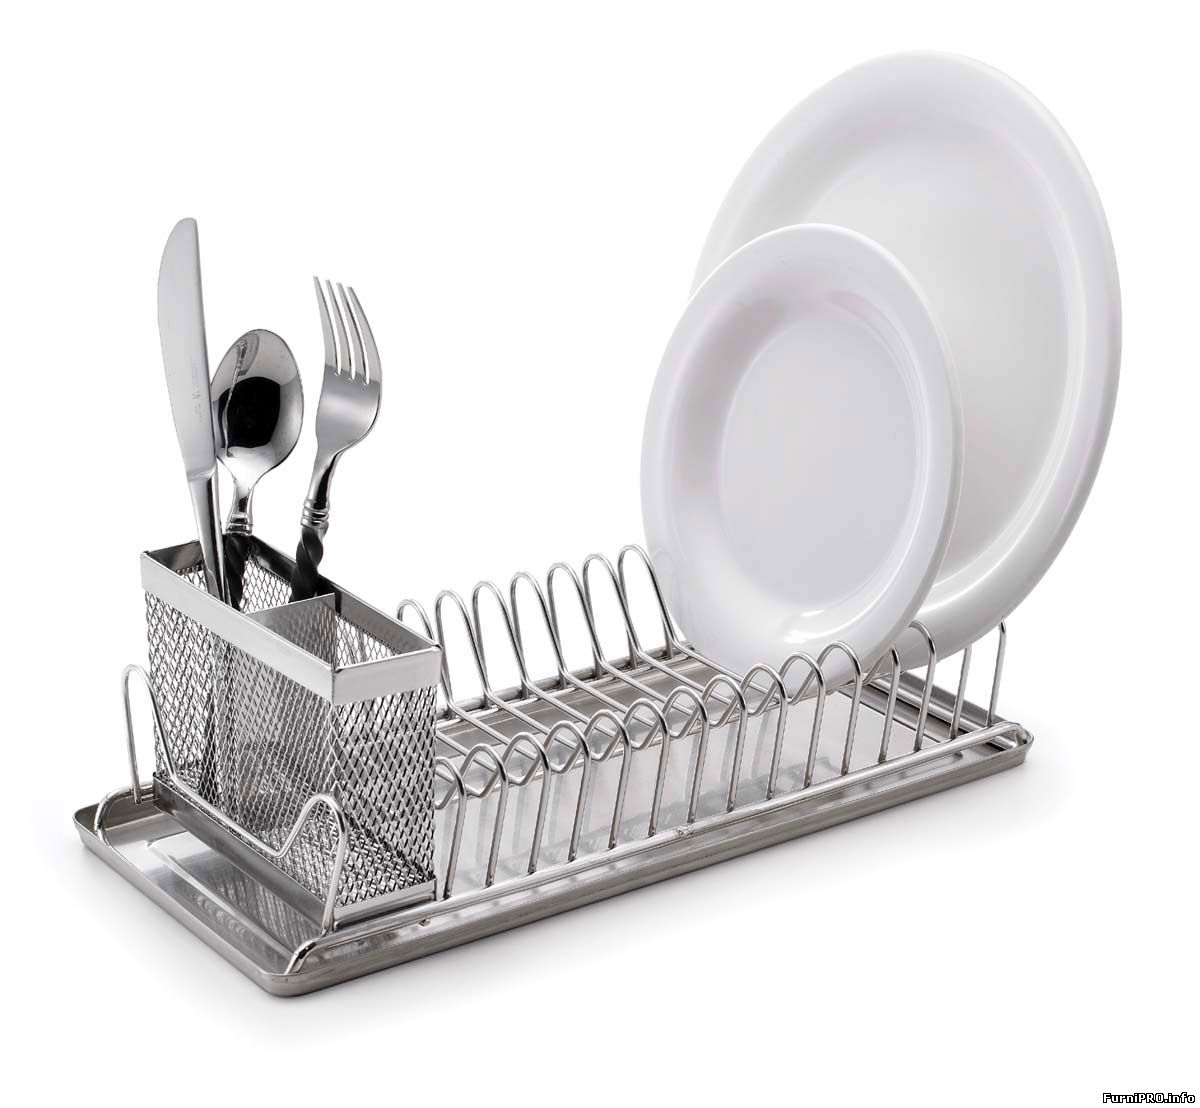 Сушилки для посуды нержавейка купить. Сушилка для посуды Stainless Steel dish Rack. Сушилка для посуды Bekker BK-5512. Сушилка для посуды dish Rack км 0769c. Сушилка для посуды ALIEXPRESS 304 Stainless Steel Kitchen dish Drainer.